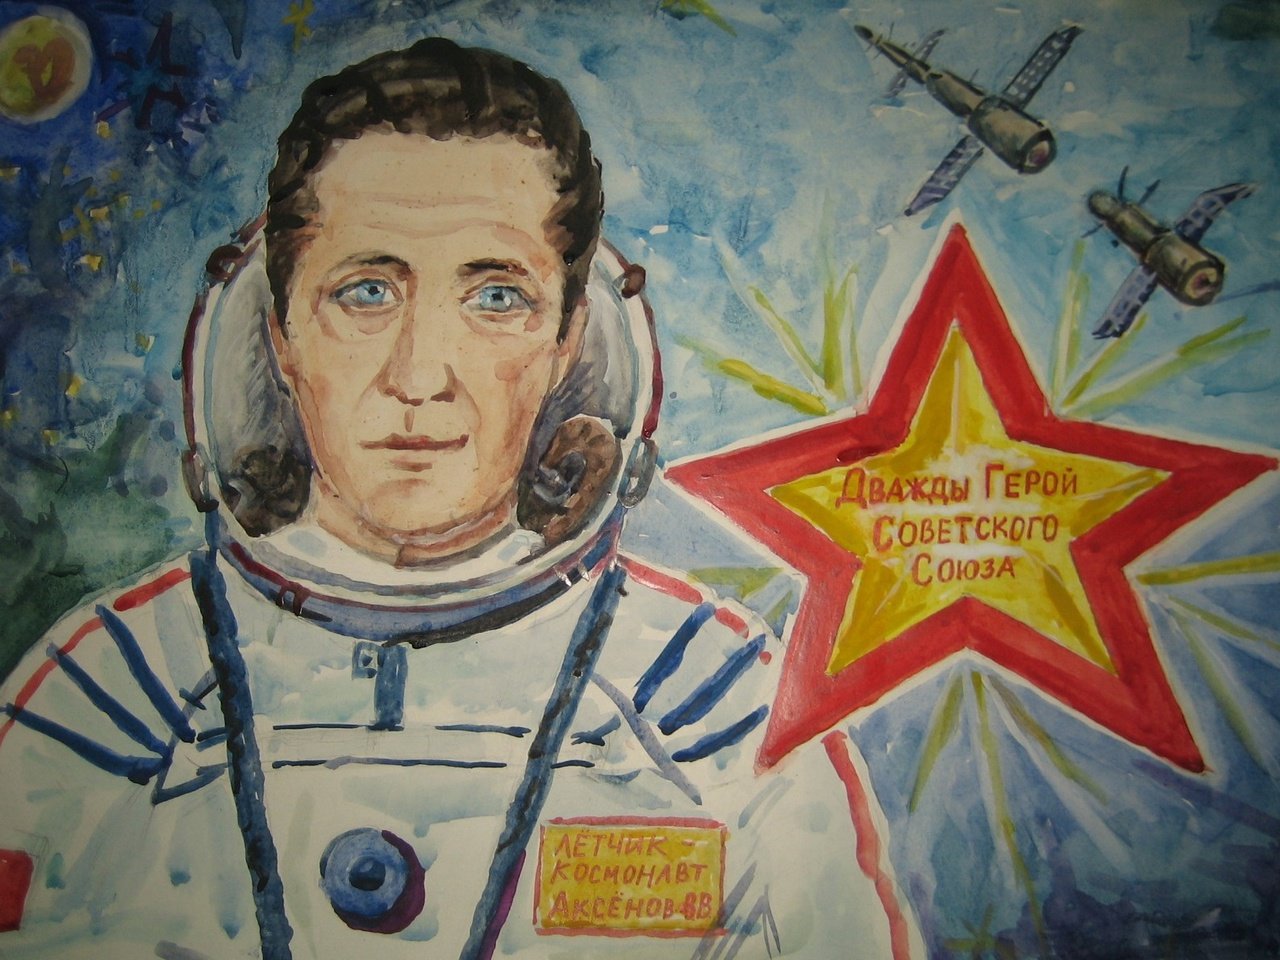 Анатолий Титов художник портрет Космонавта Аксенова